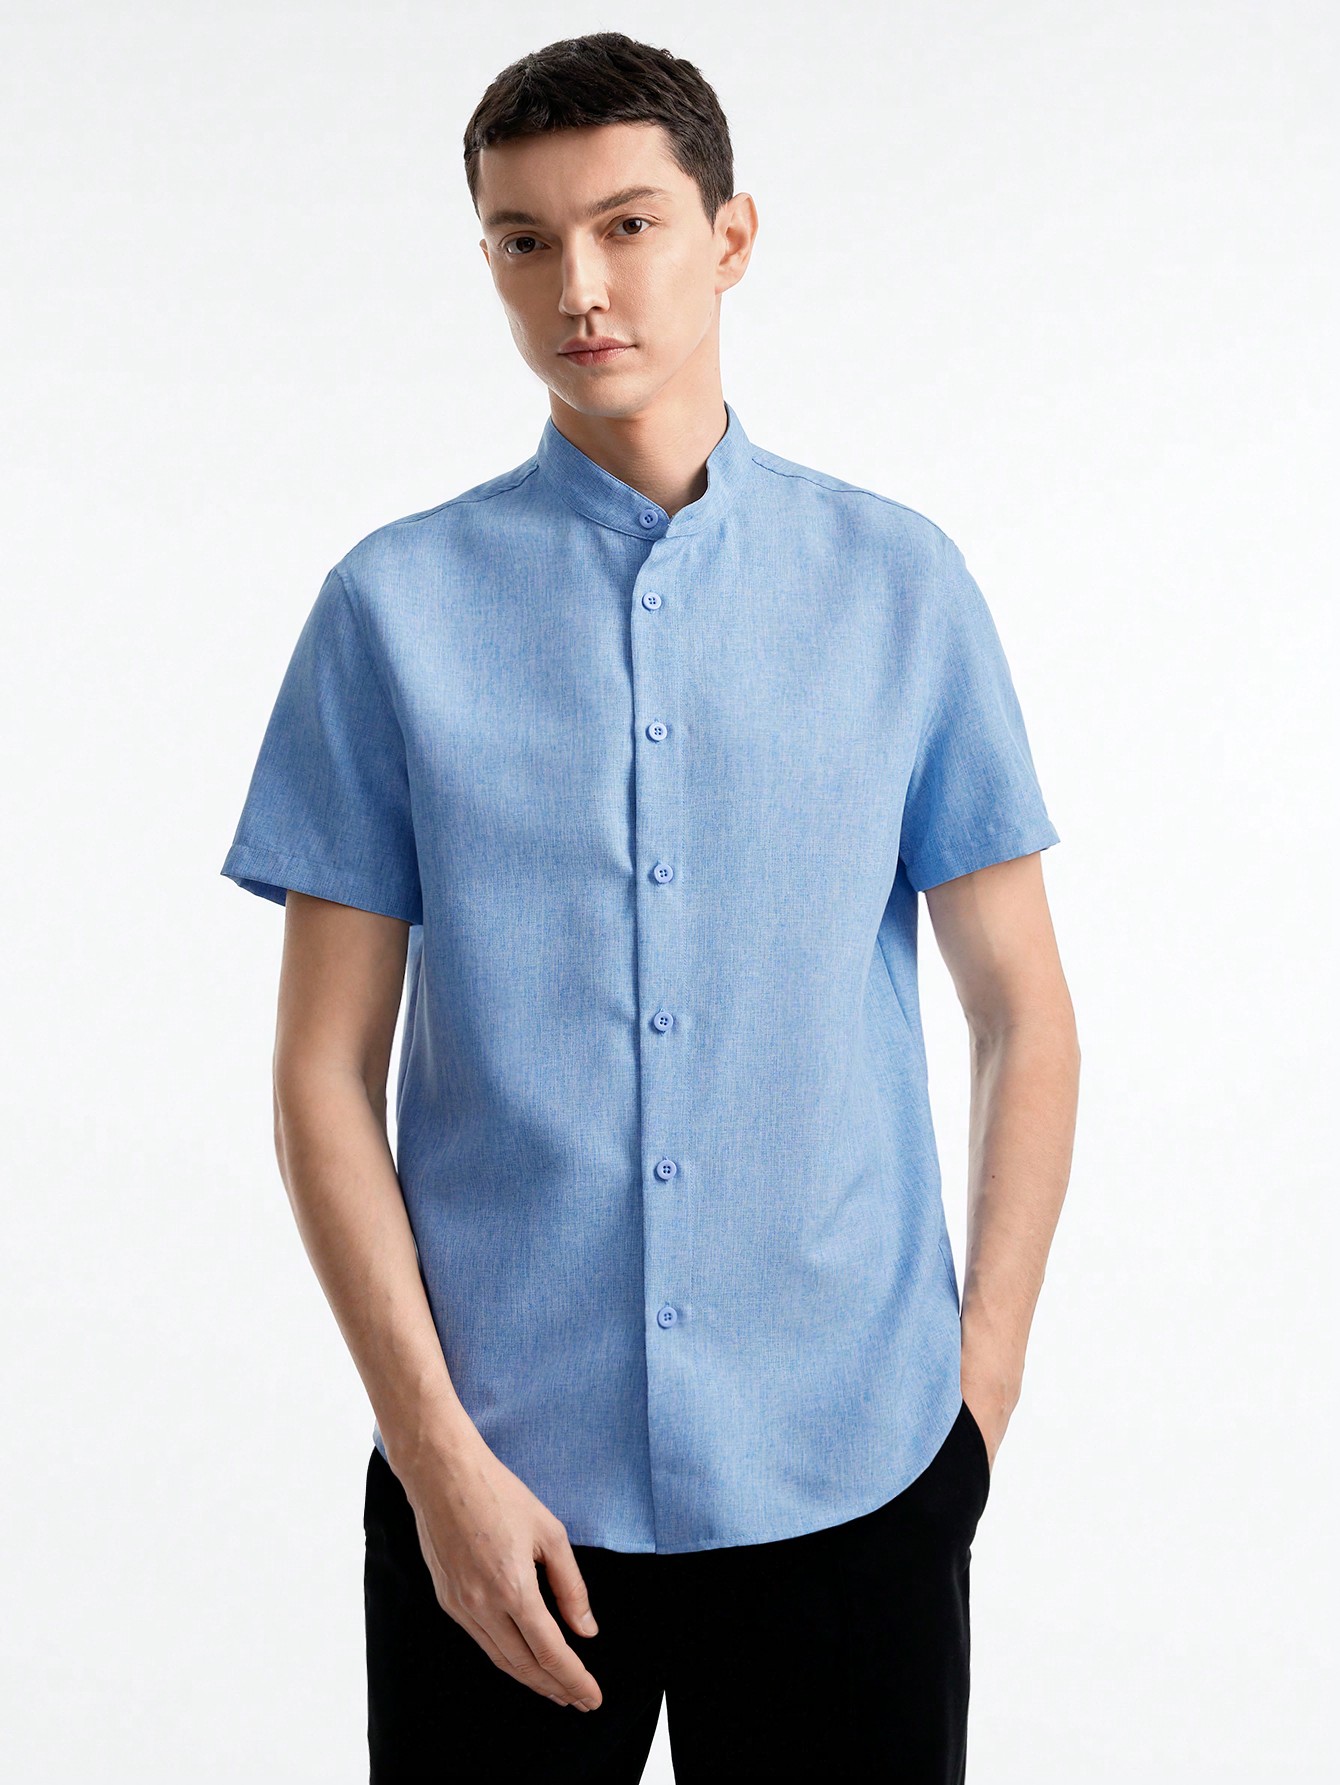 Мужская тканая рубашка с короткими рукавами Manfinity Basics, голубые